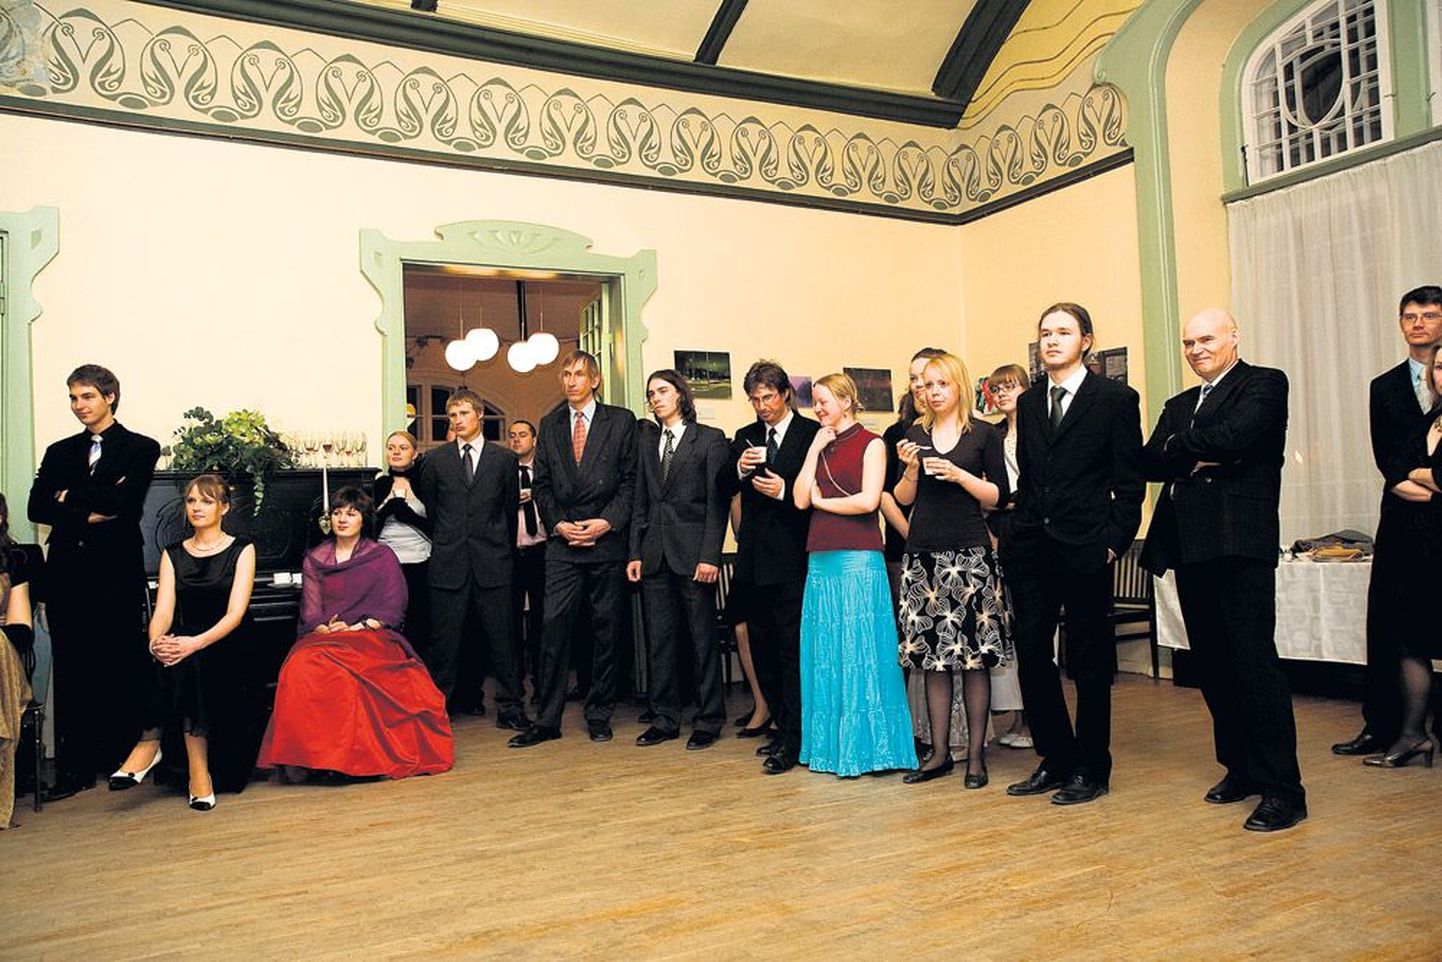 Laupäeval toimus Saksa Kultuuri Instituudis Liivika perekonnaõhtu, kus 100. aastapäeva pidustustest võtsid liiviklased osa koos kaaslastega.